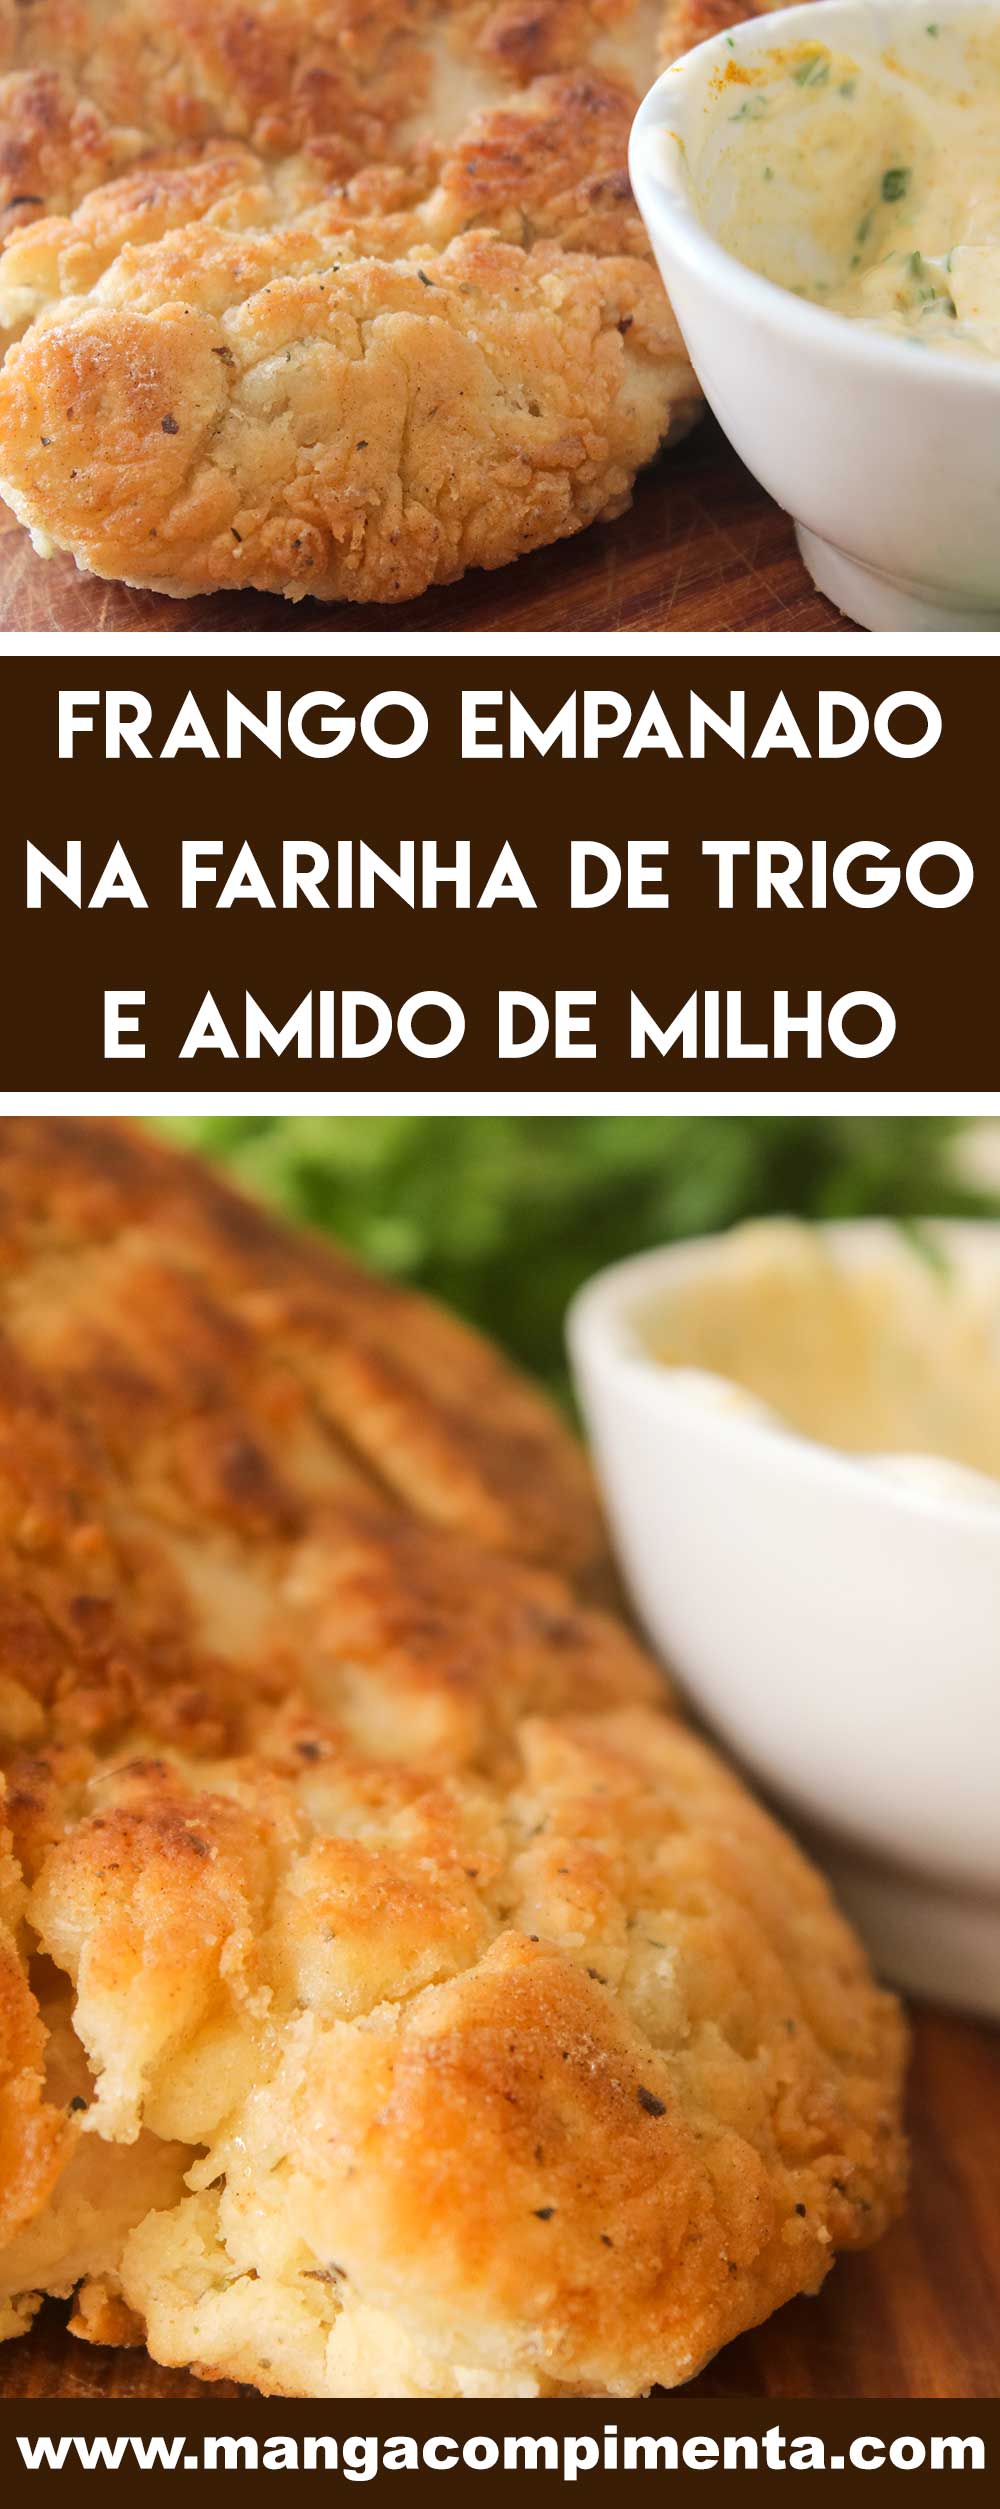 Receita de Frango Empanado na Farinha de Trigo - um prato delicioso para o almoço da semana ou para petiscar no final de semana com os amigos.